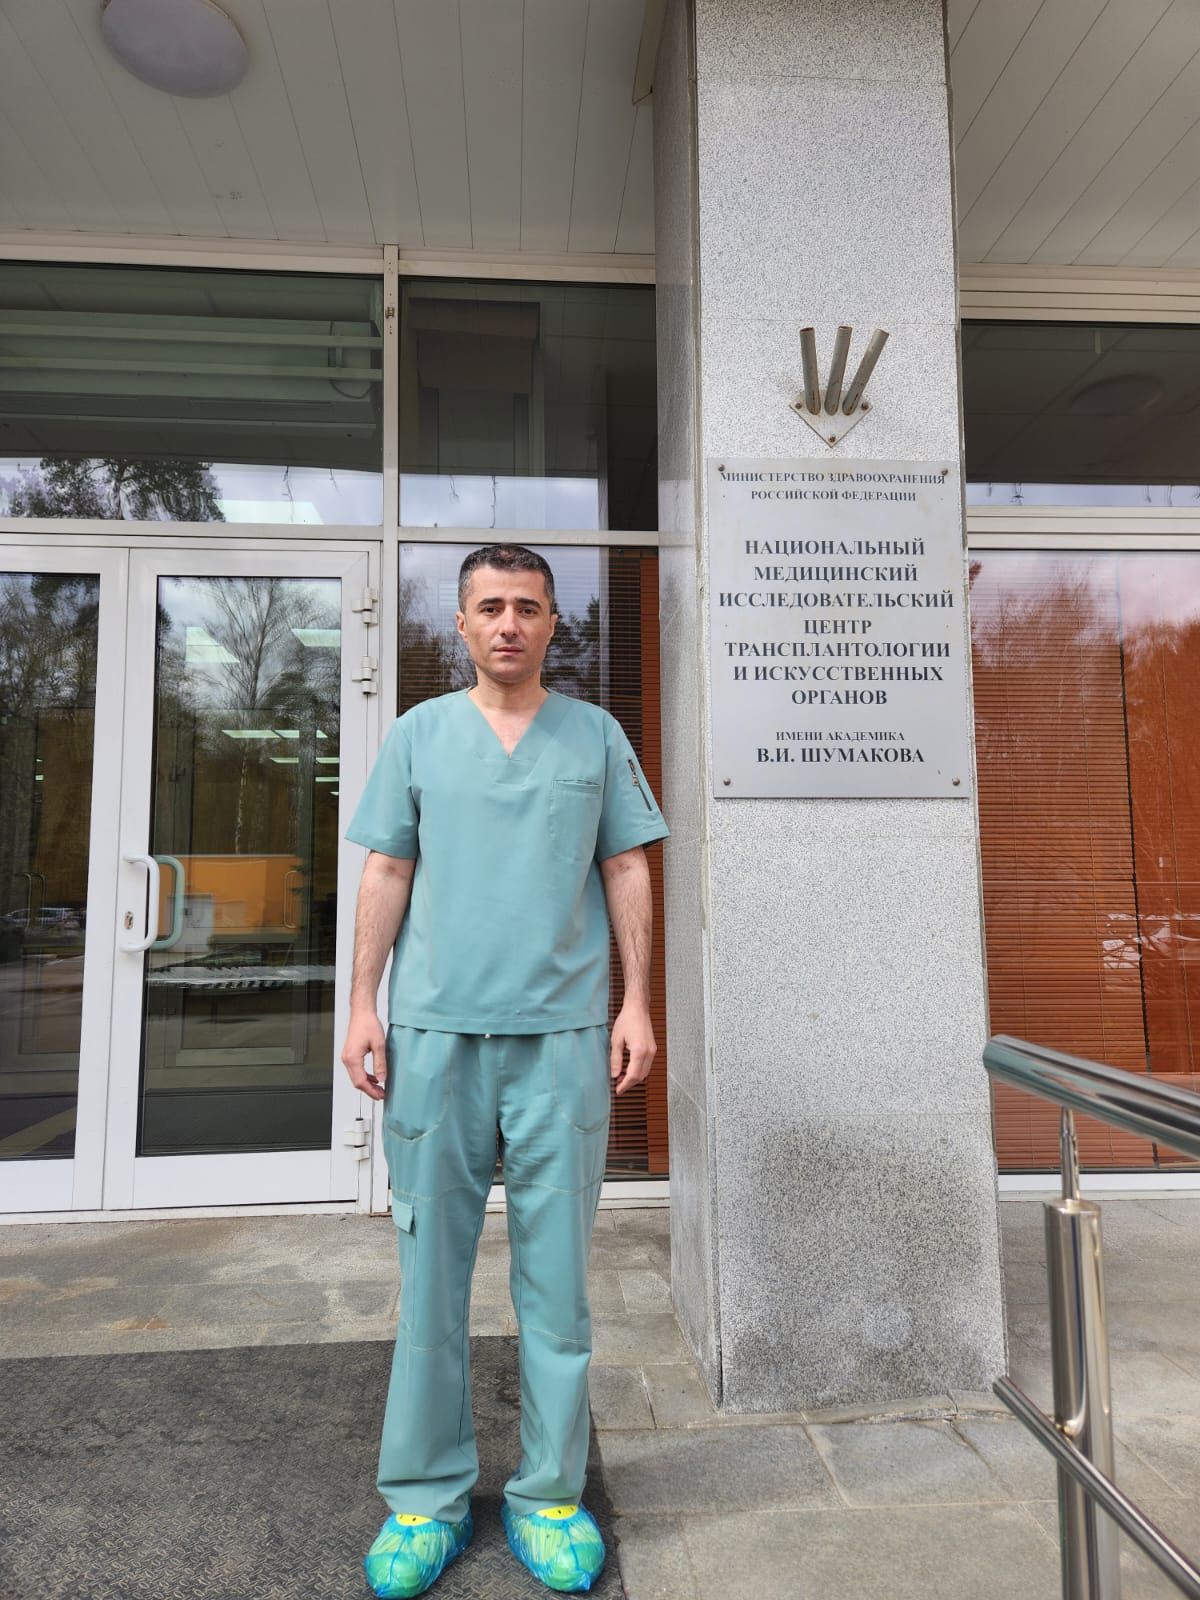 Azərbaycanlı cərrah Rusiyada ürək transplantasiyası üzrə kursda iştirak edir